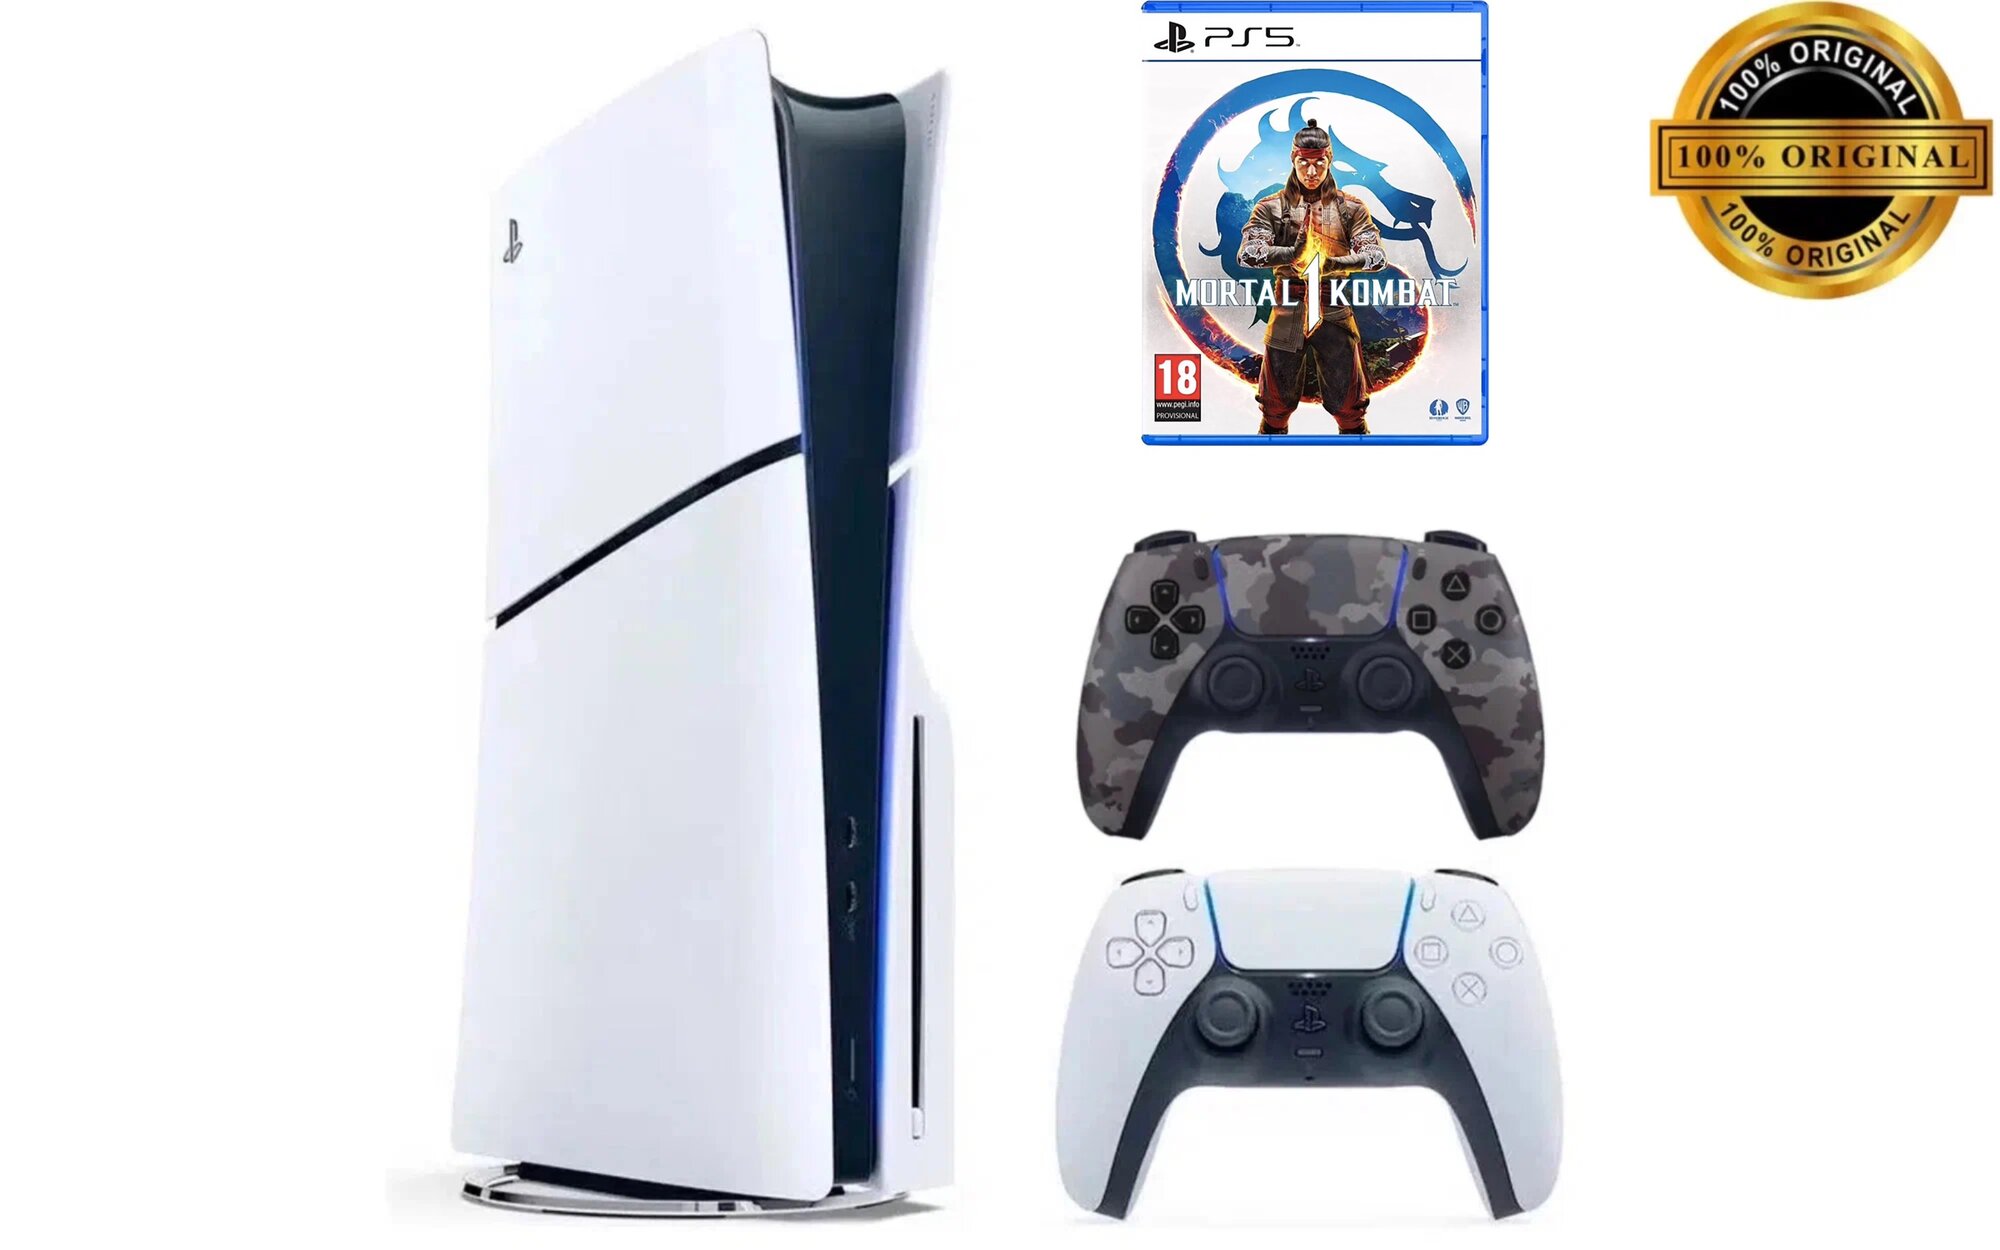 Игровая приставка Sony PlayStation 5 Slim, с дисководом, 1 ТБ, два геймпада (белый и камуфляжный), Mortal Kombat 1